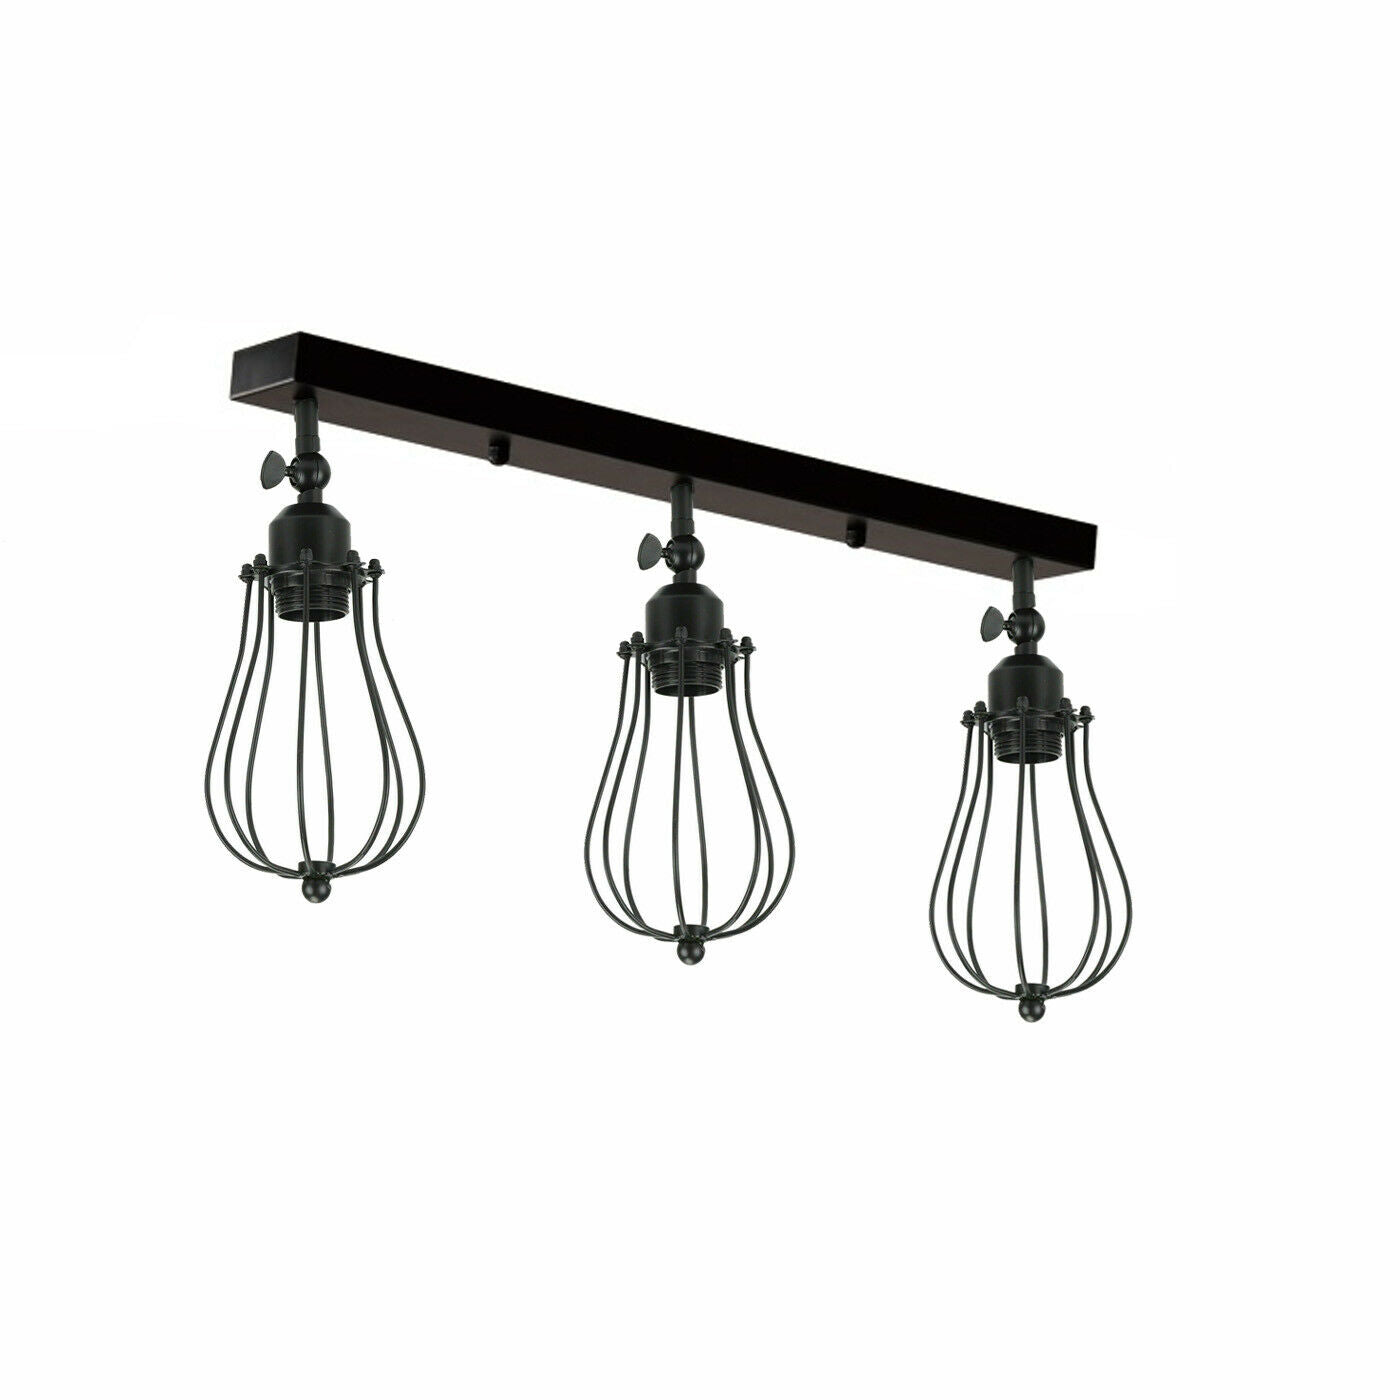 Vintage Industrial 3 Way Ceiling Bar Cage Lights Adjustable Matt Black E27 Bulb Lighting~2277 - LEDSone UK Ltd